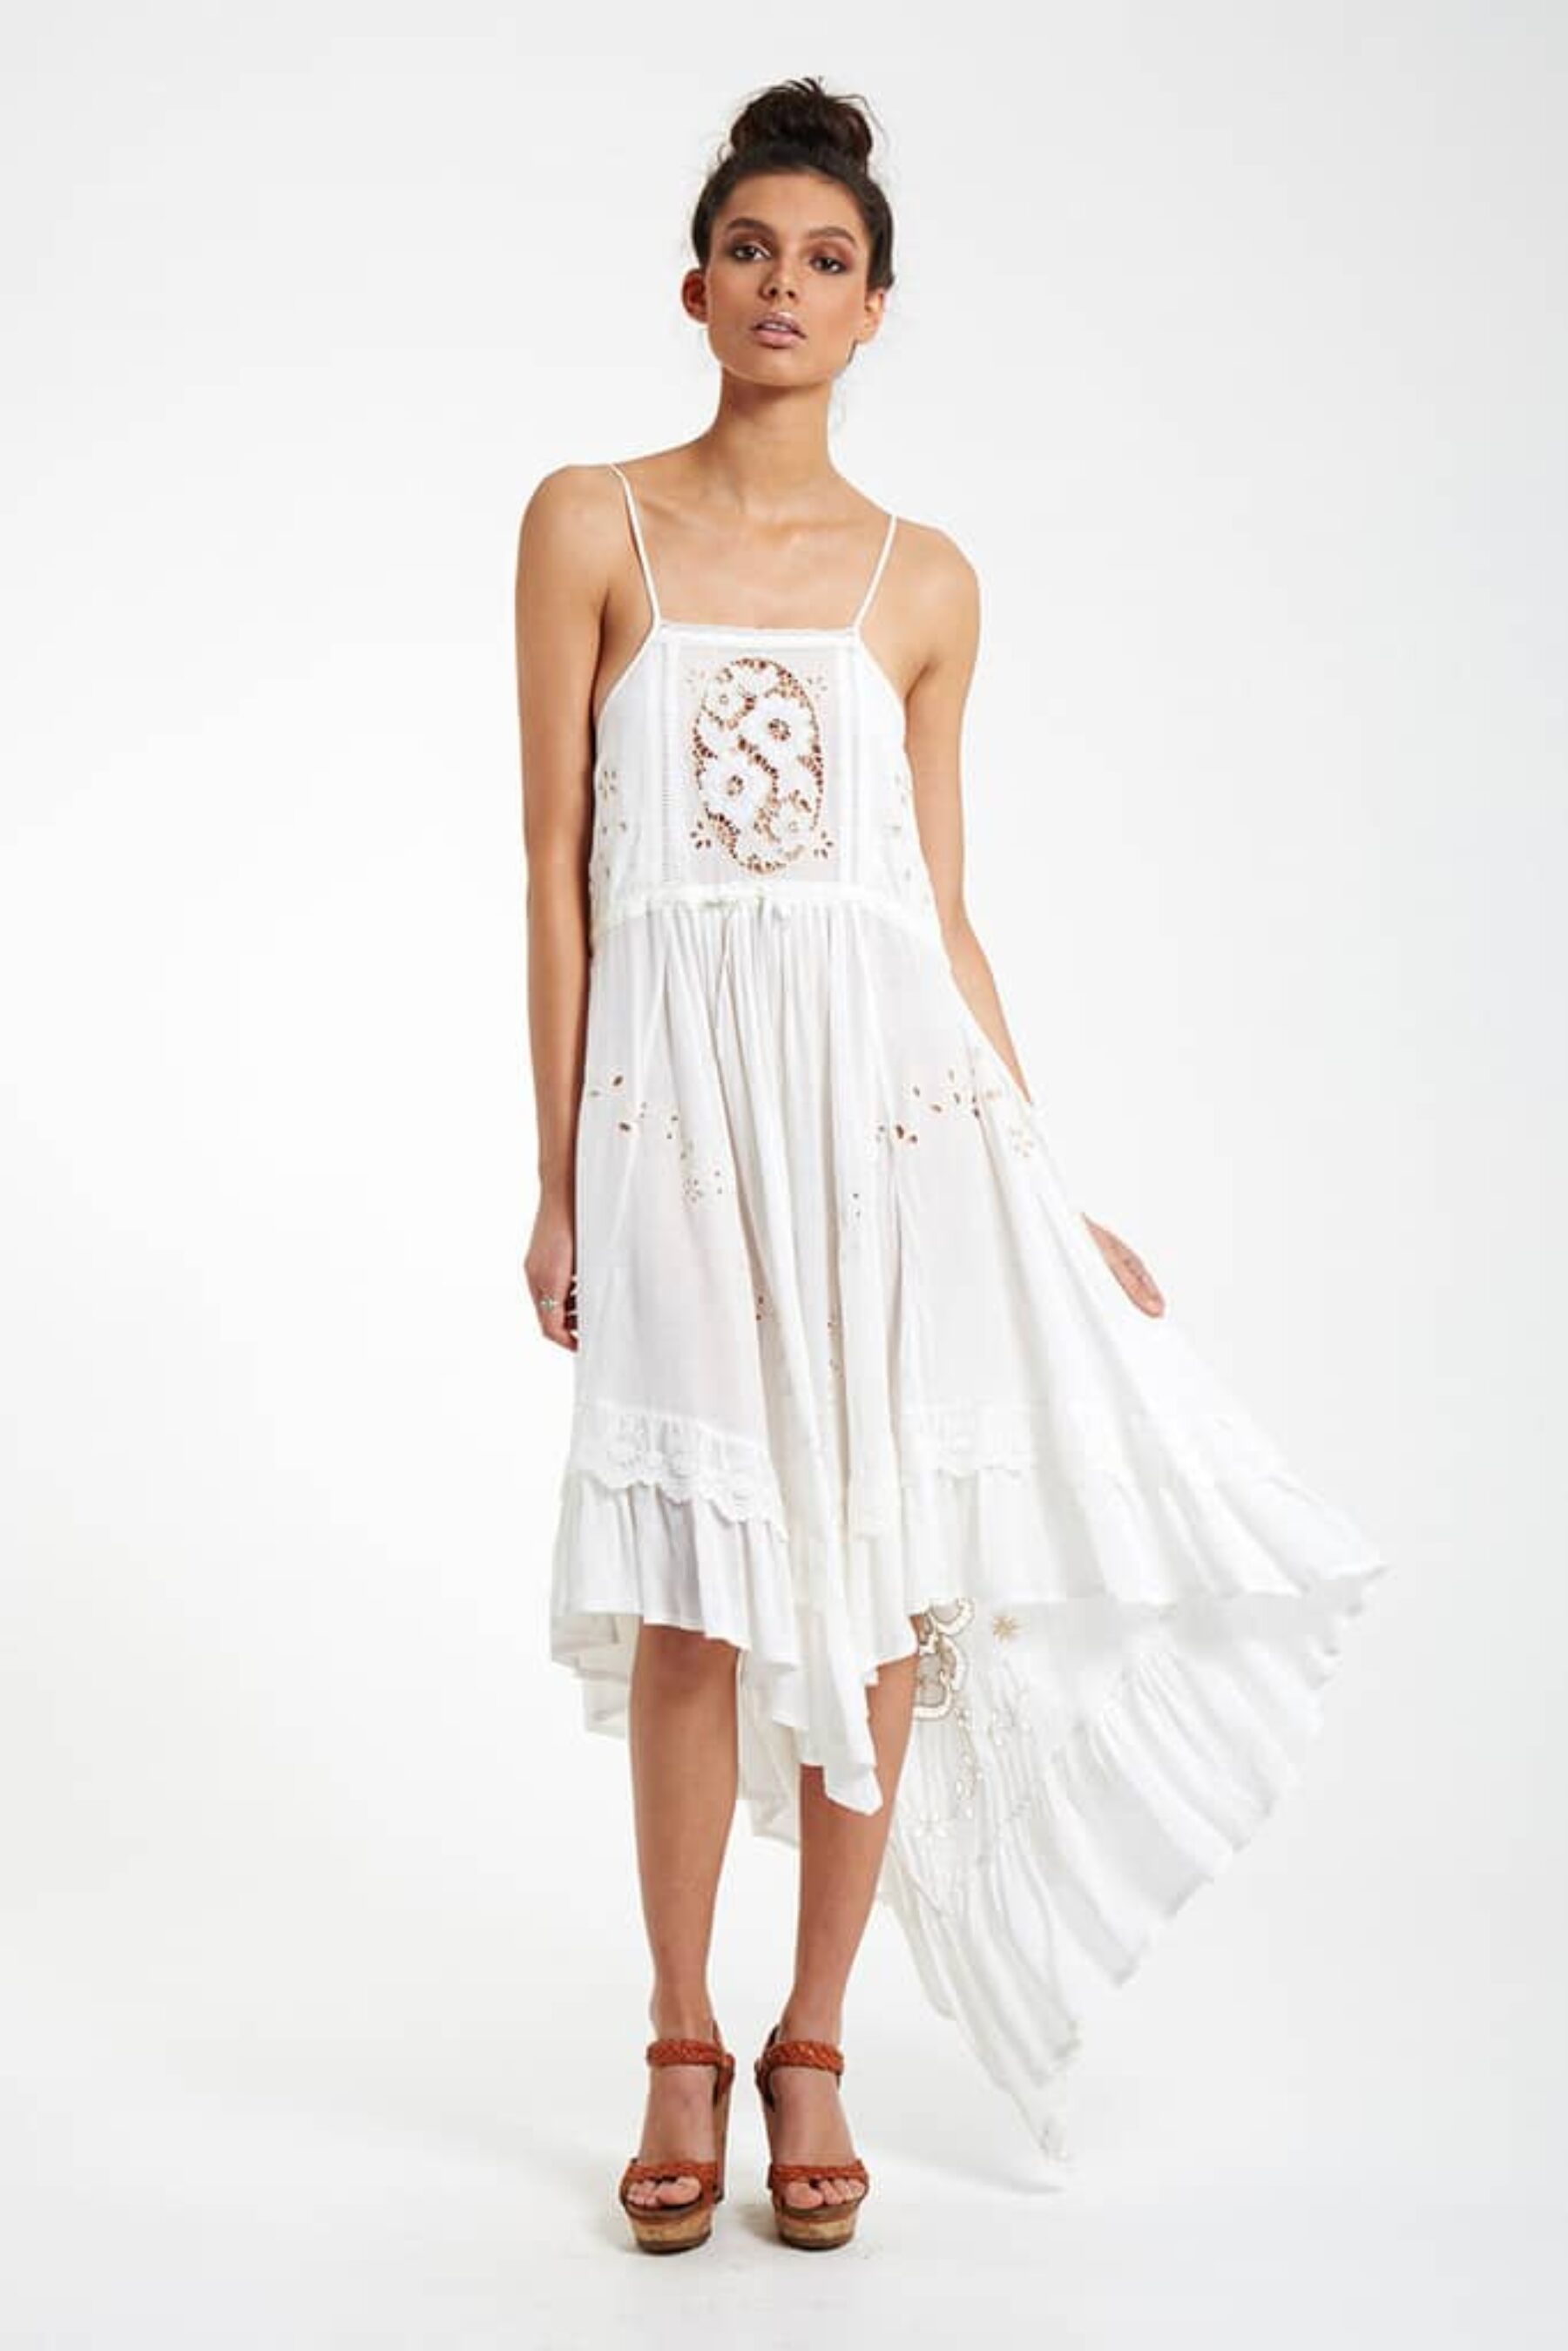 Spell Designs bridesmaid dress